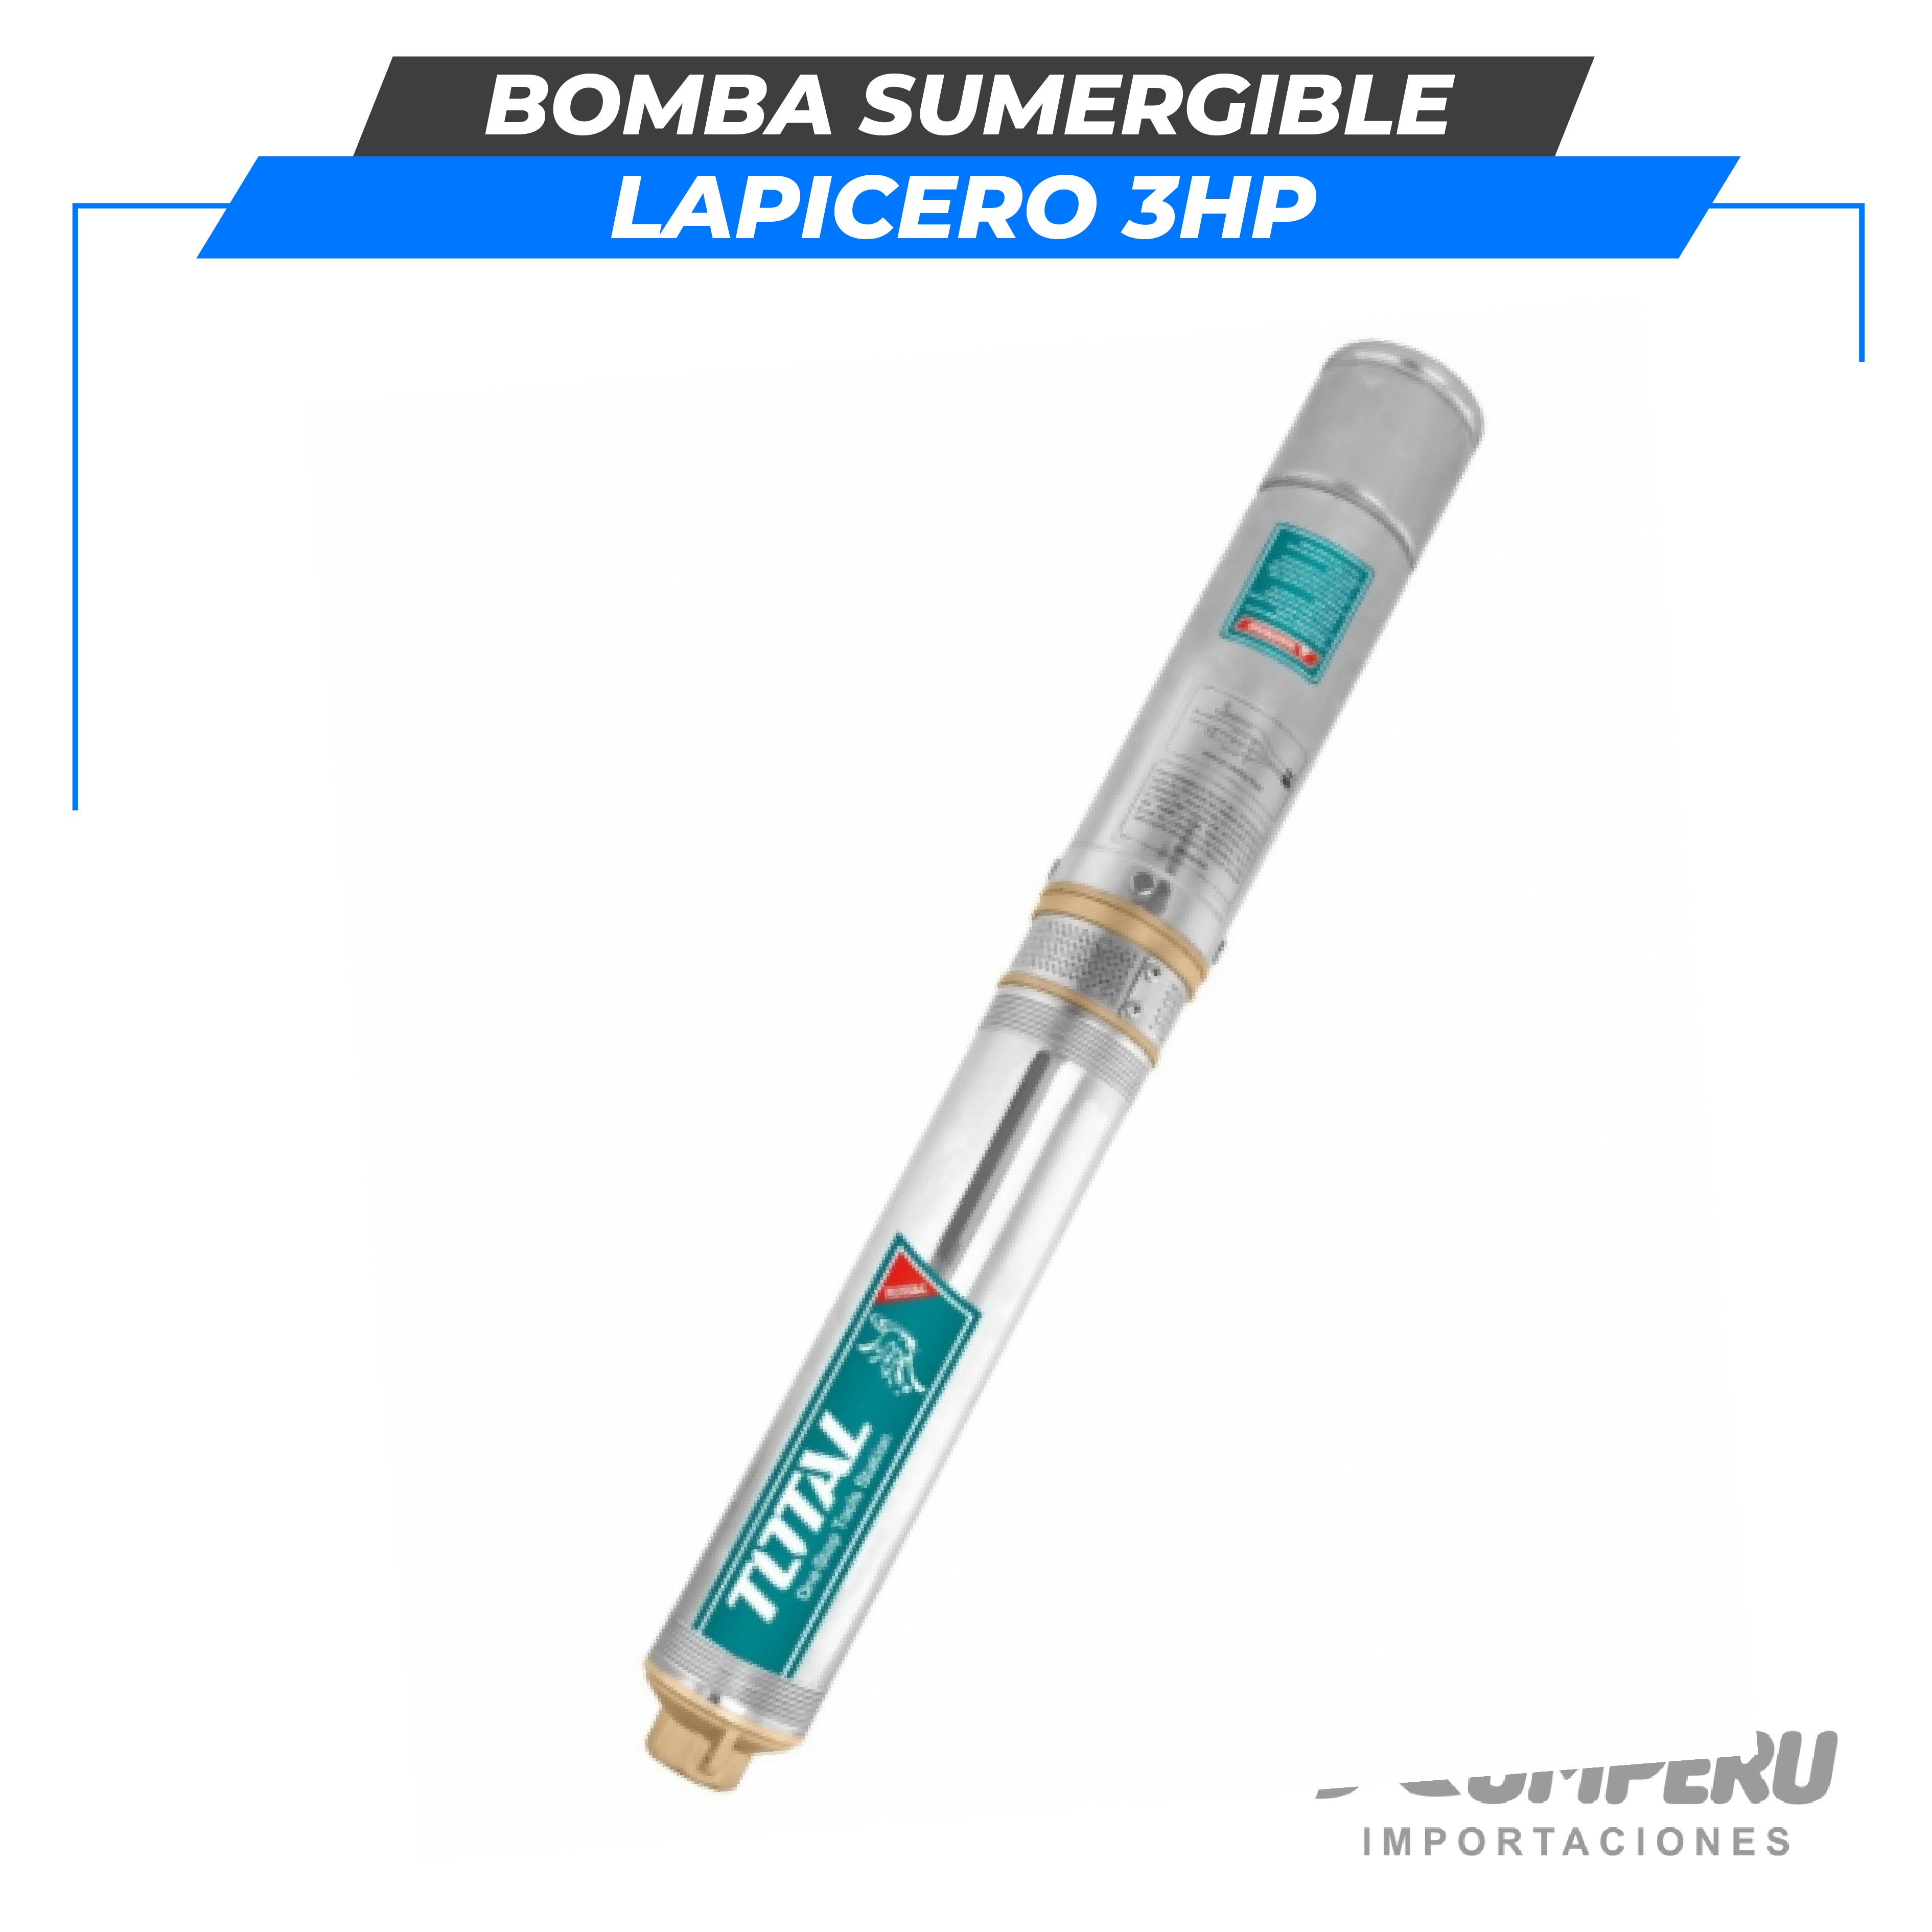 Bomba sumergible lapicero 3HP